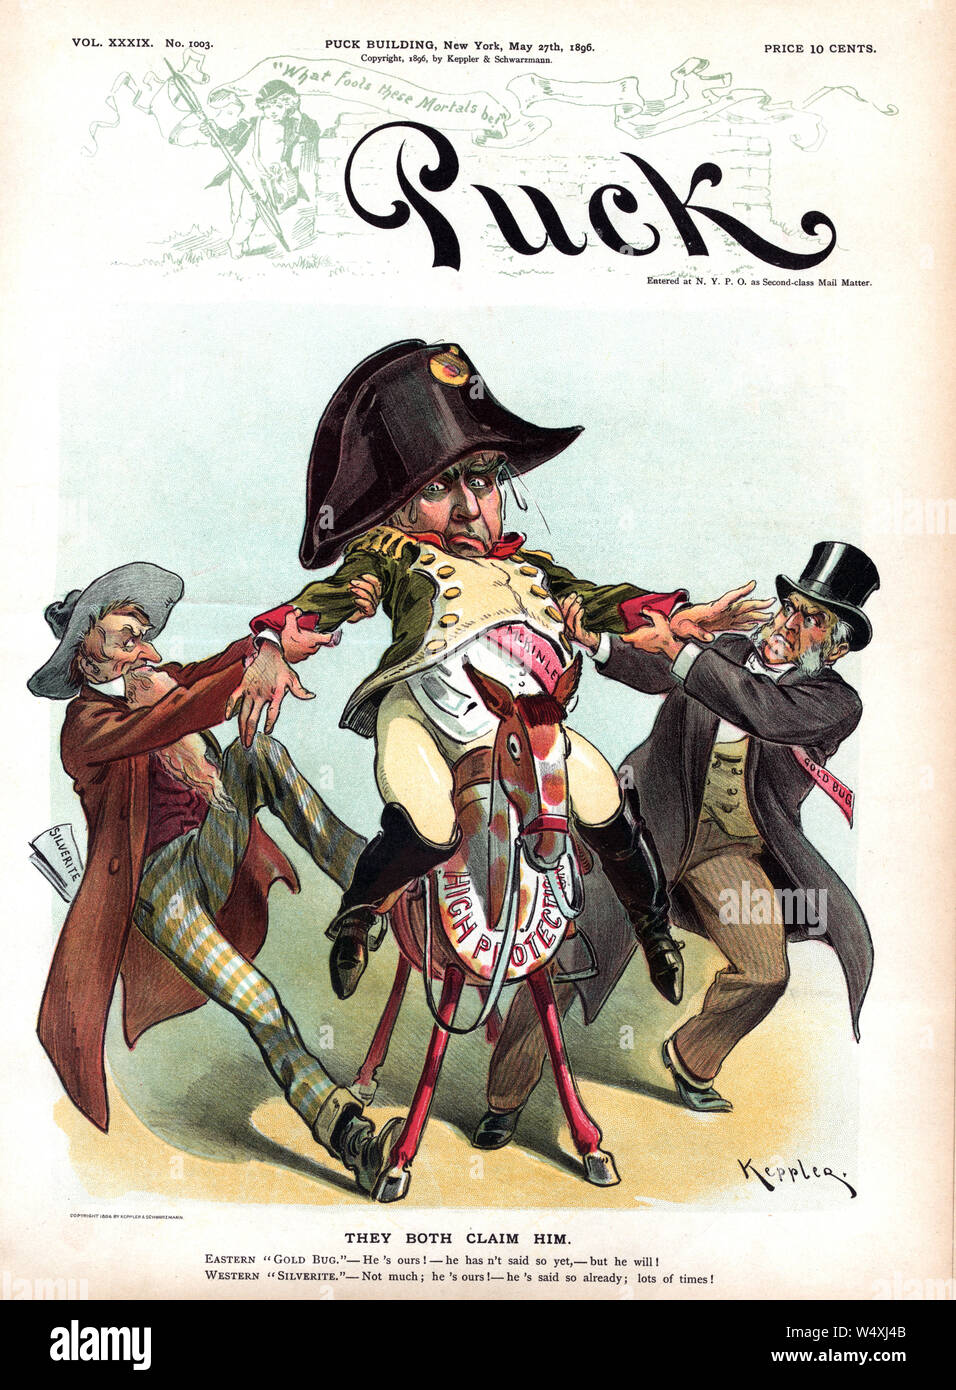 "Sie beide behaupten, Ihn', Politische Karikatur, Puck Magazin, Artwork von Udo J. Keppler, von Keppler & Schwartzmann, 27. Mai 1896 veröffentlicht. Stockfoto